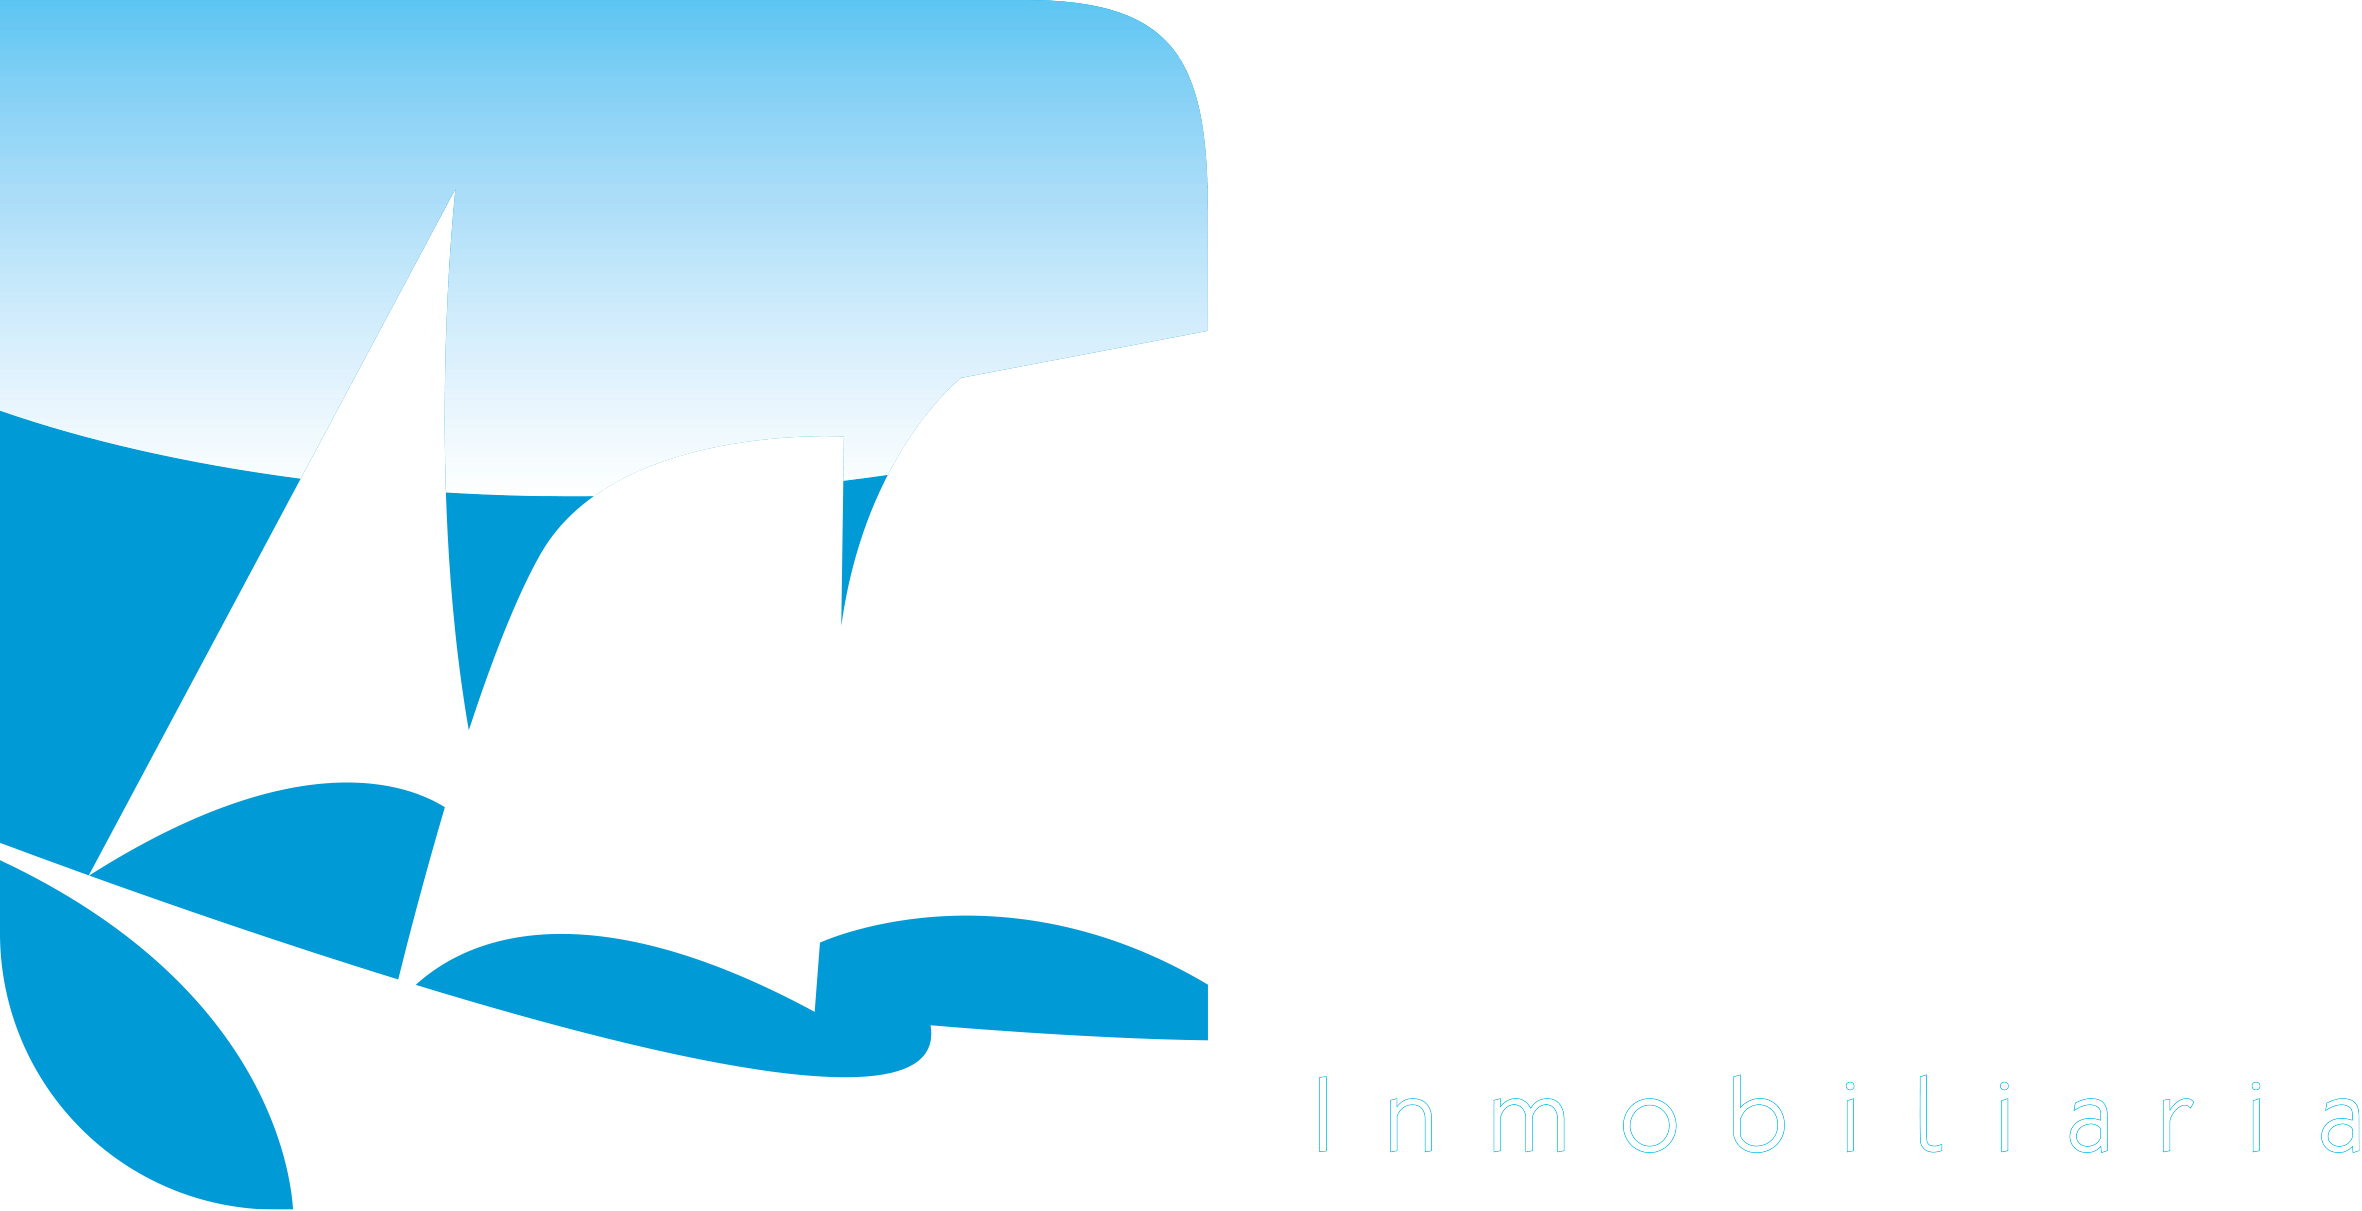 Inmobiliaria Puerto Mayor